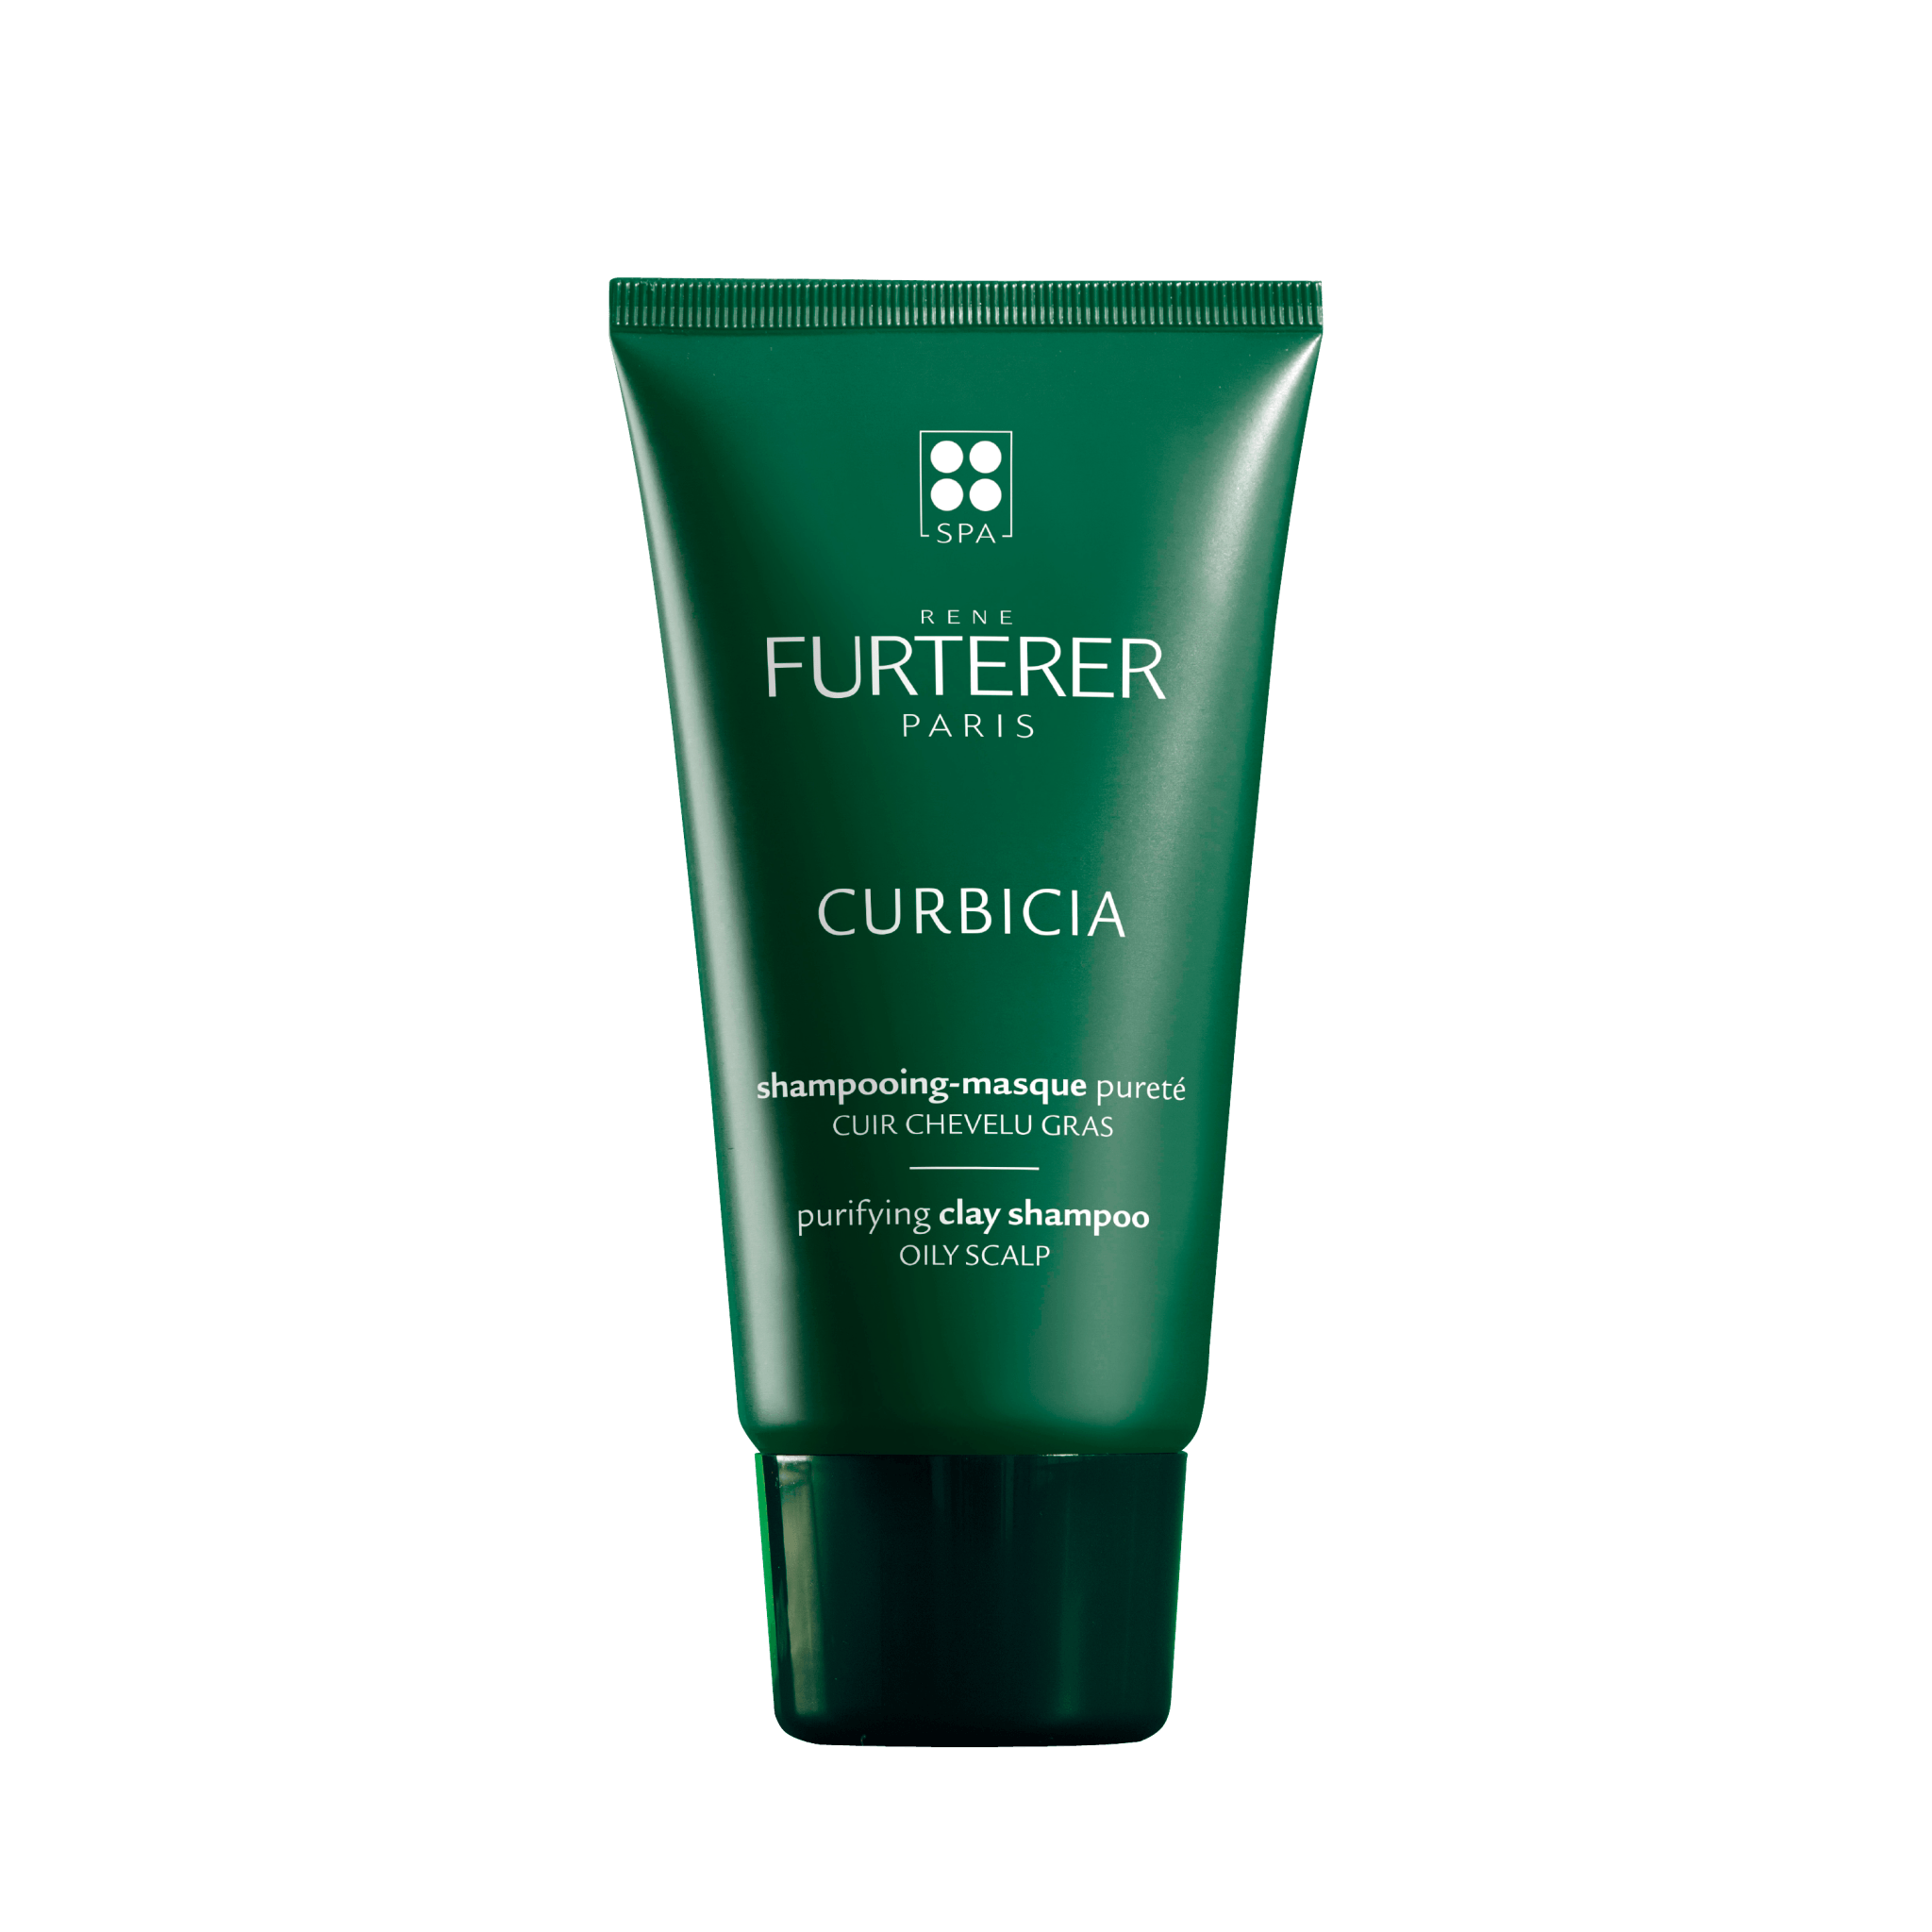 CURBICIA shampoing-masque pureté à l&#39;argile absorbante 100ml- René Furterer - 53 Karat